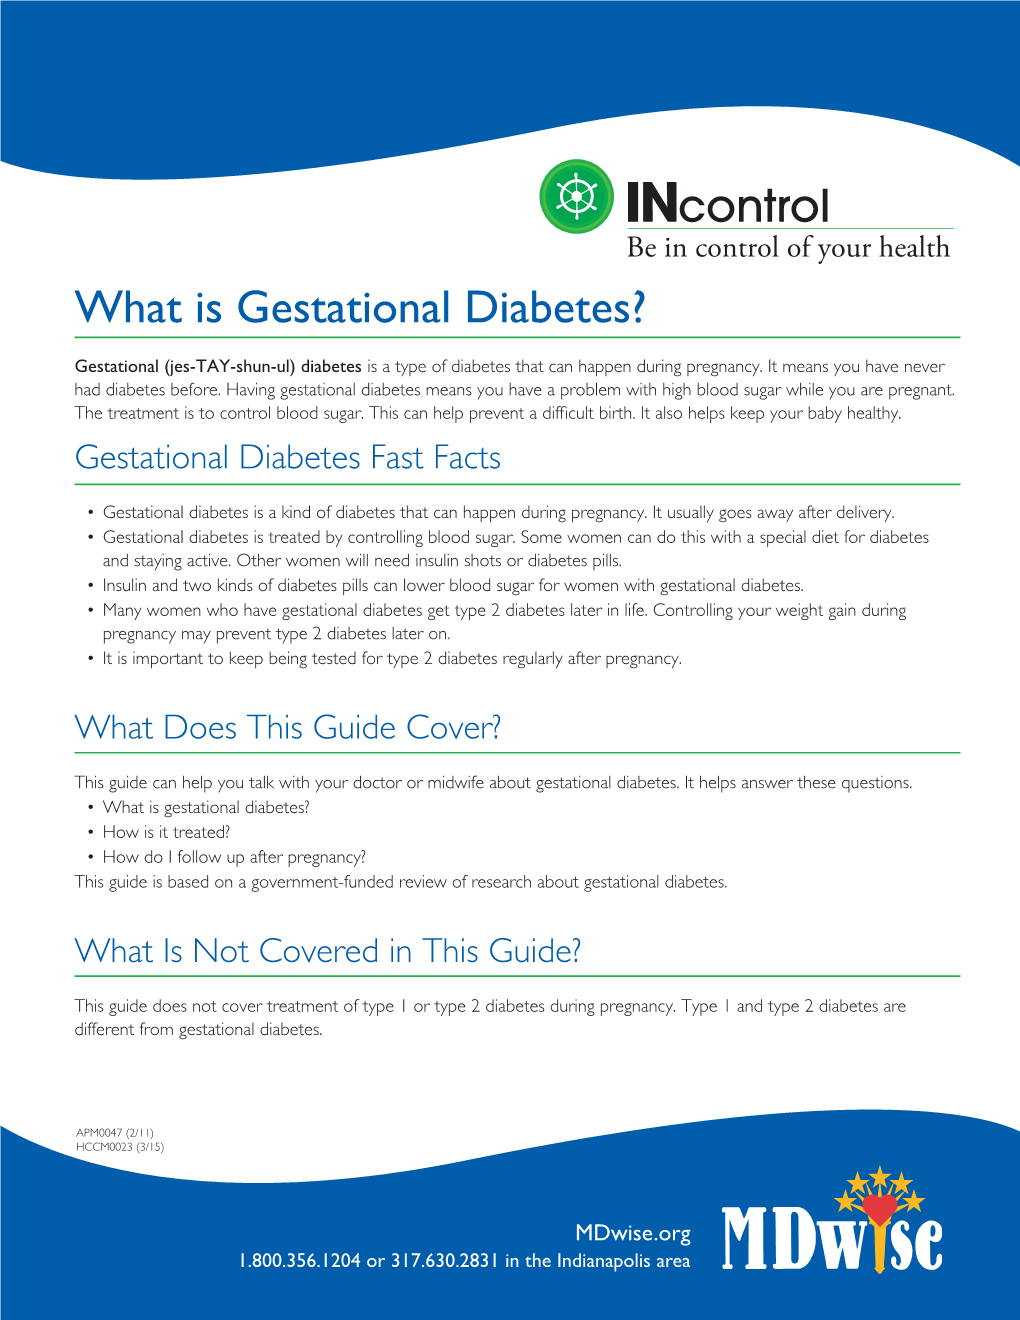 What Is Gestational Diabetes?